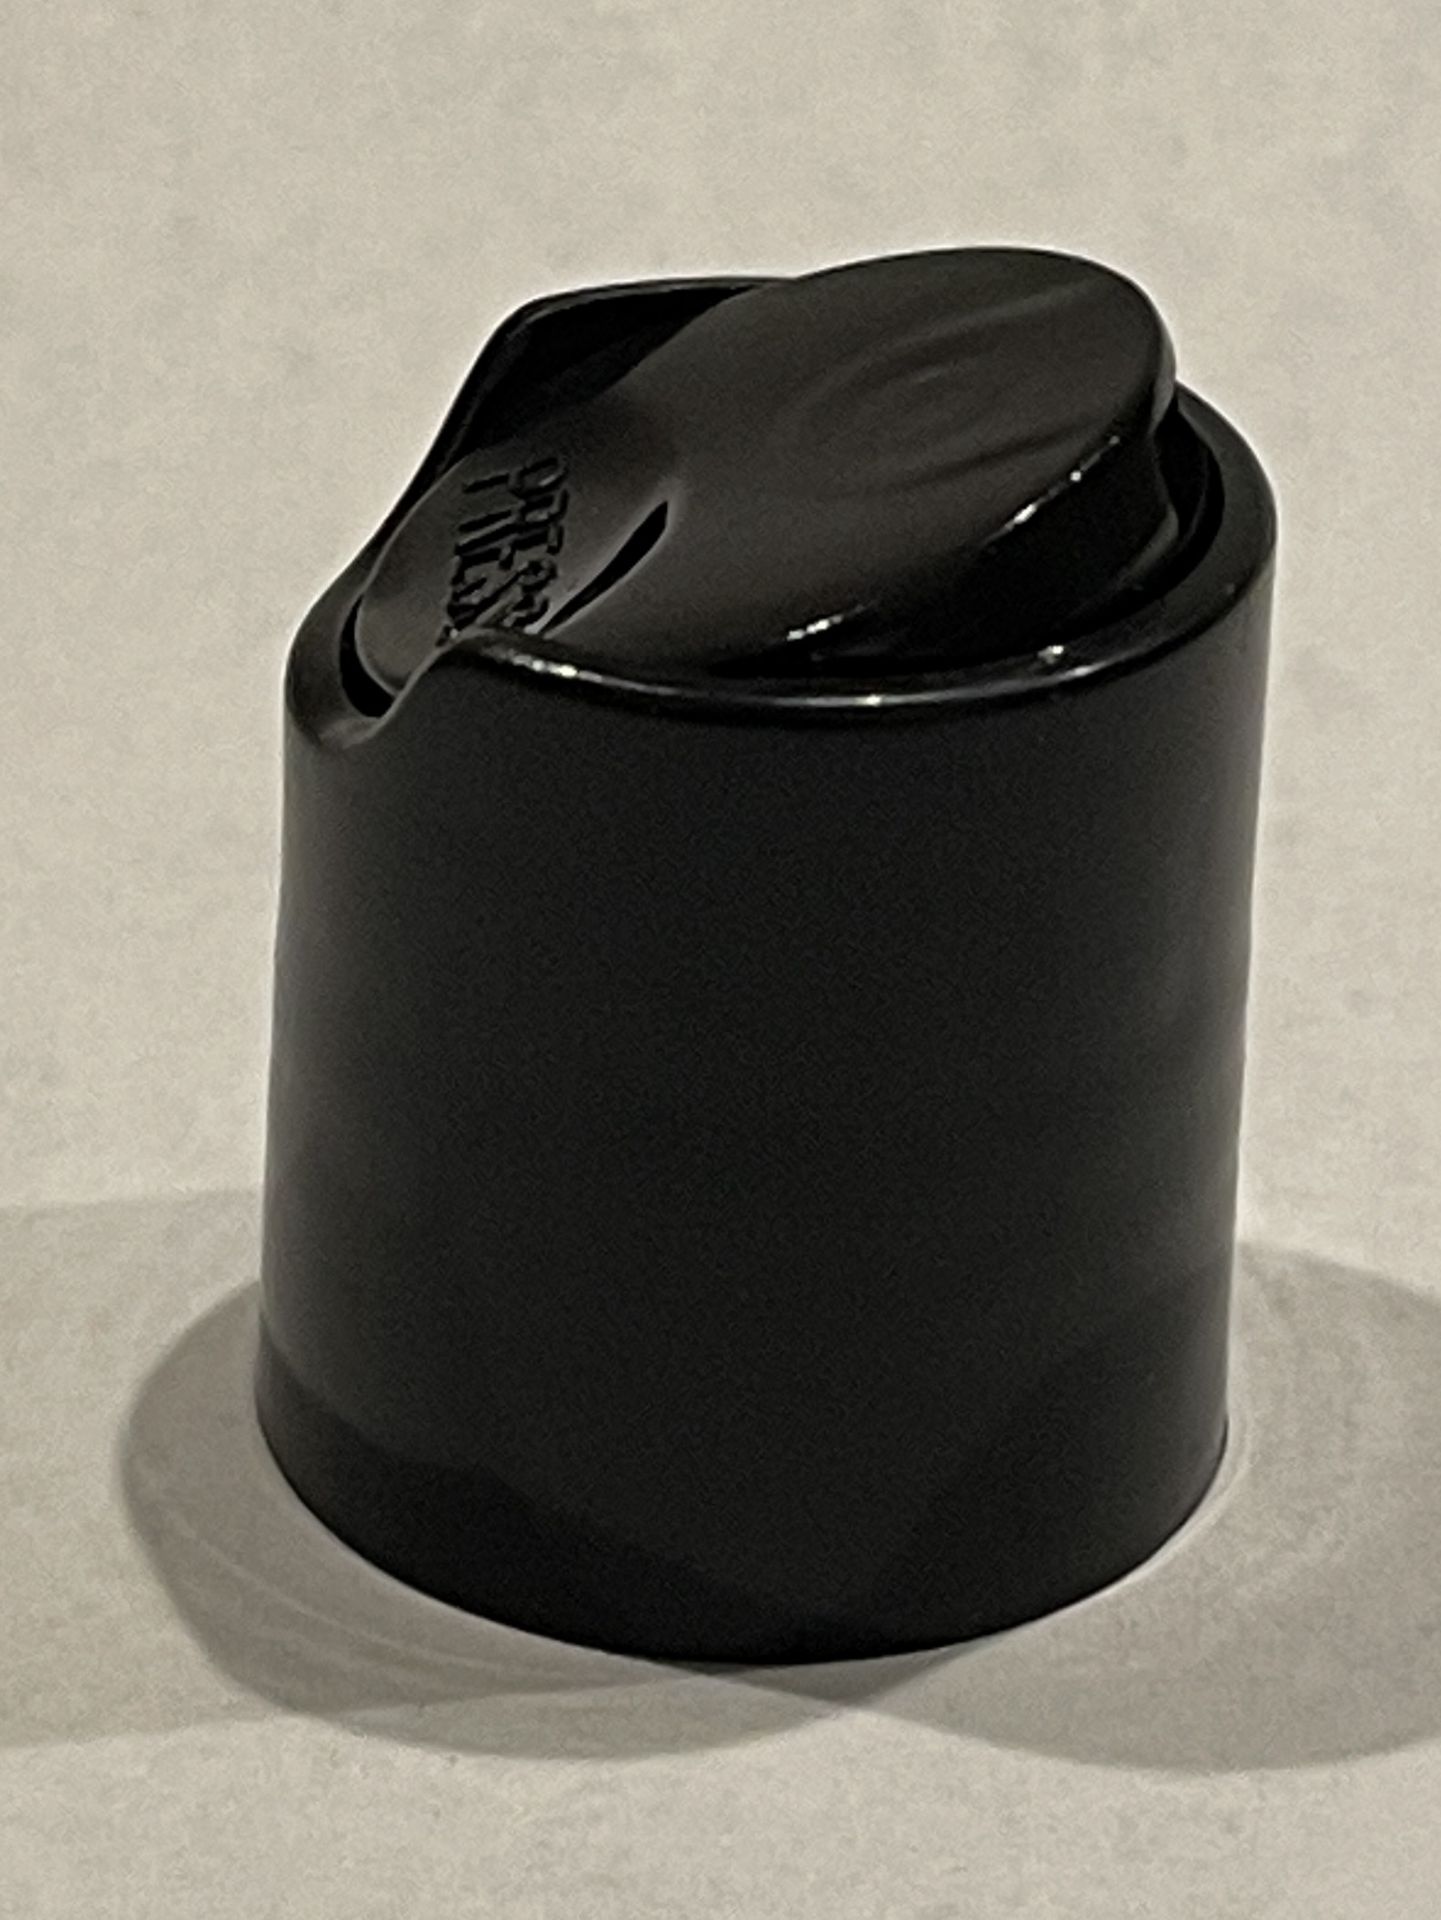 84,000 - Black Disc Bottle Caps for 2 oz plastic bottles and 4 oz glass bottles, 20-410 Threading